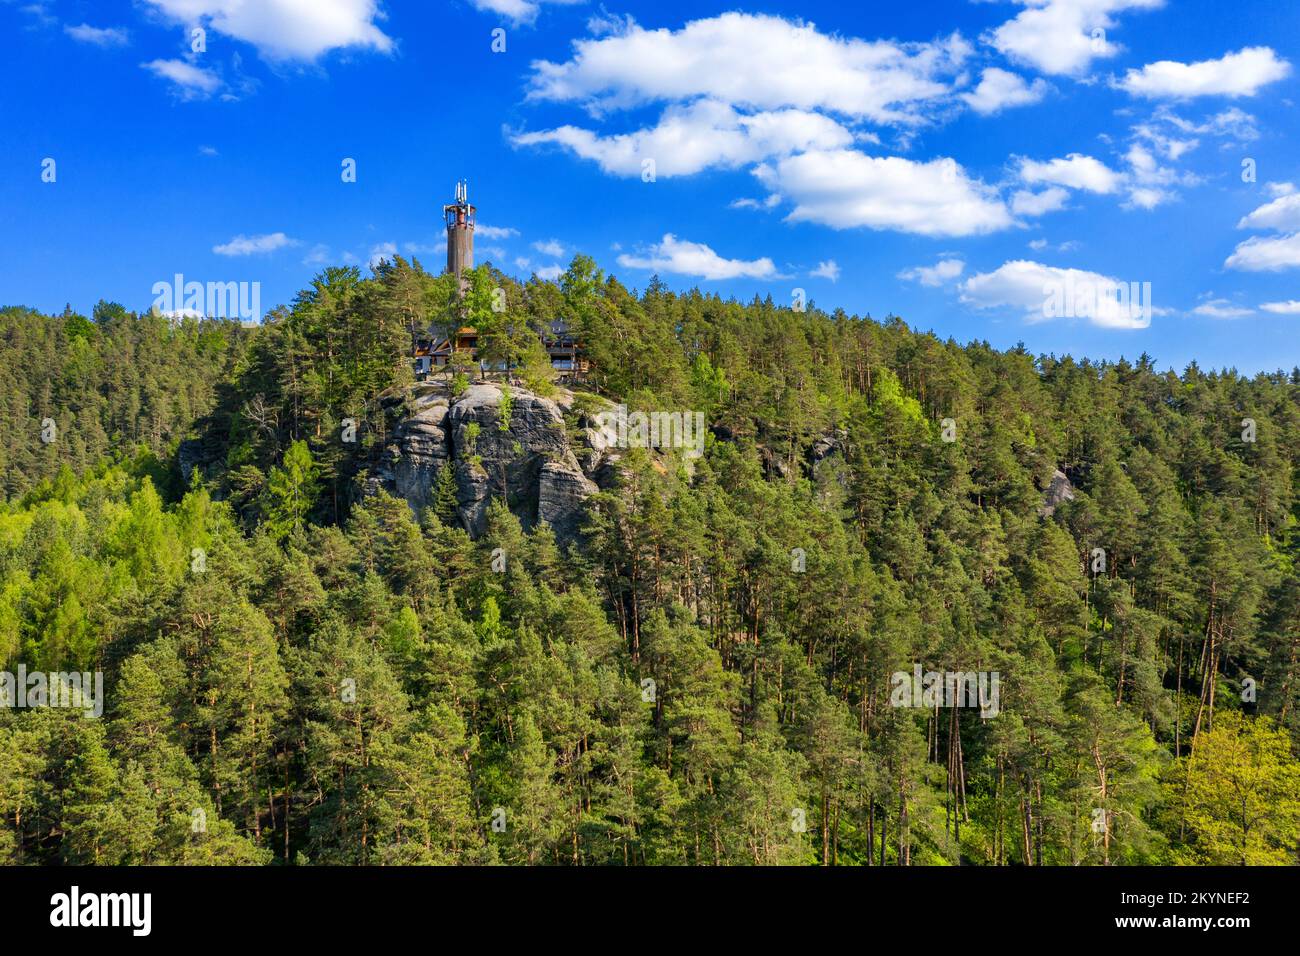 Luftaufnahme des Schlosses Sloup in Nordböhmen, Tschechien. Schloss Sloup in der kleinen Stadt Sloup V Cechach, in der Region Liberec, Nordböhmen Stockfoto